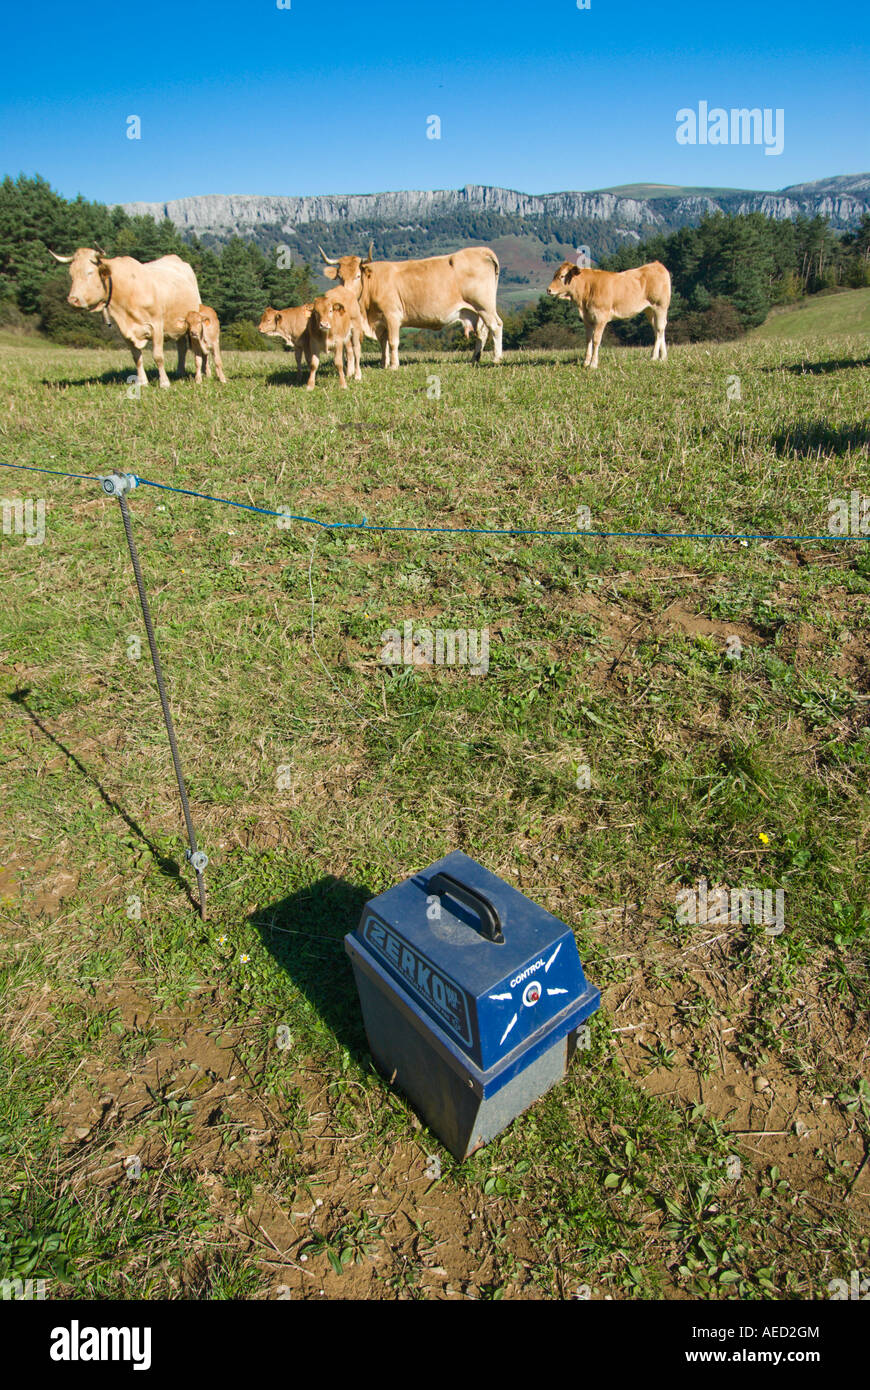 Les vaches sur meadow confiné par clôture électrifiée, Espagne Banque D'Images